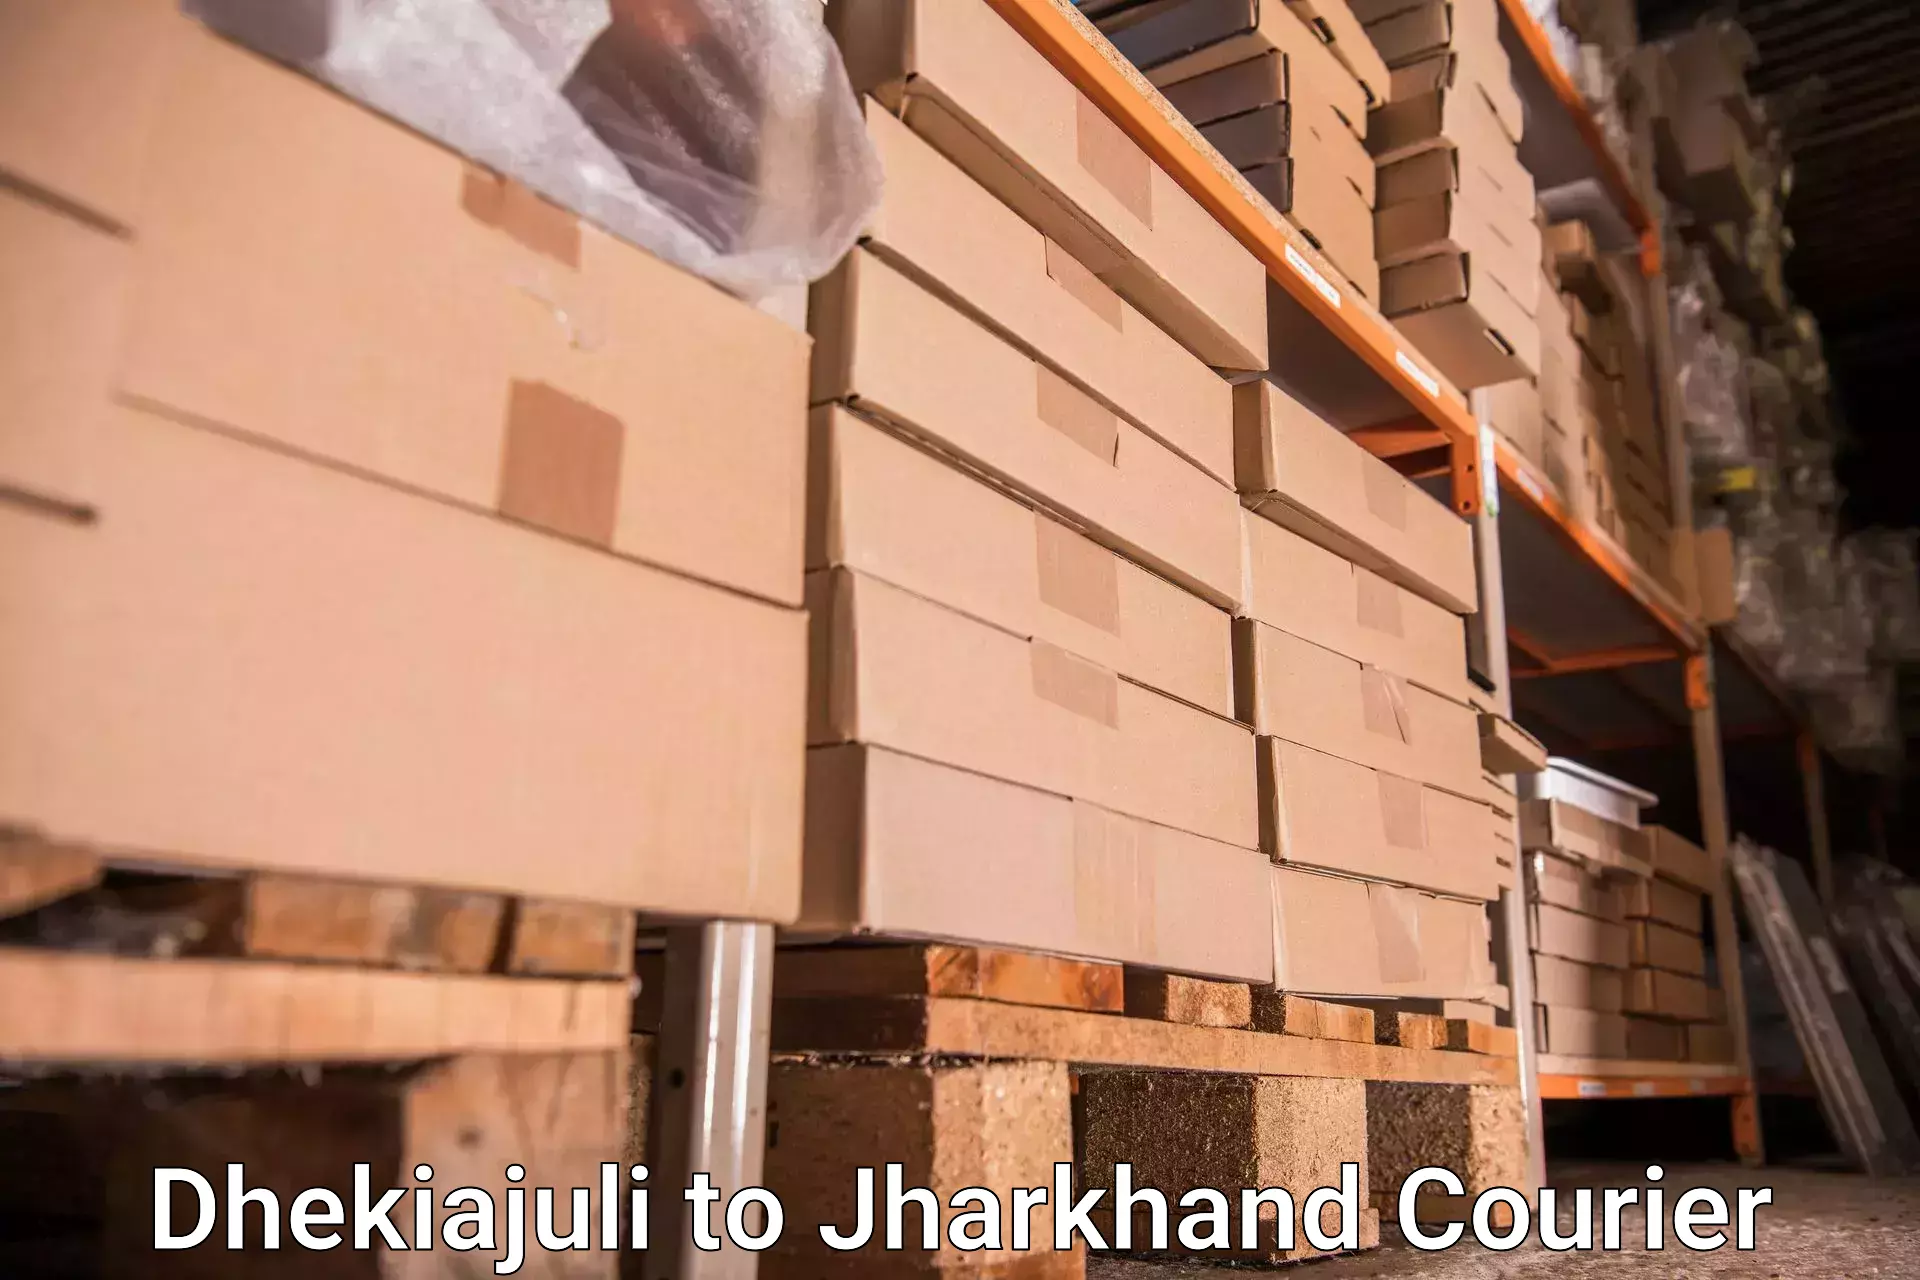 Hassle-free luggage shipping in Dhekiajuli to Bero Ranchi